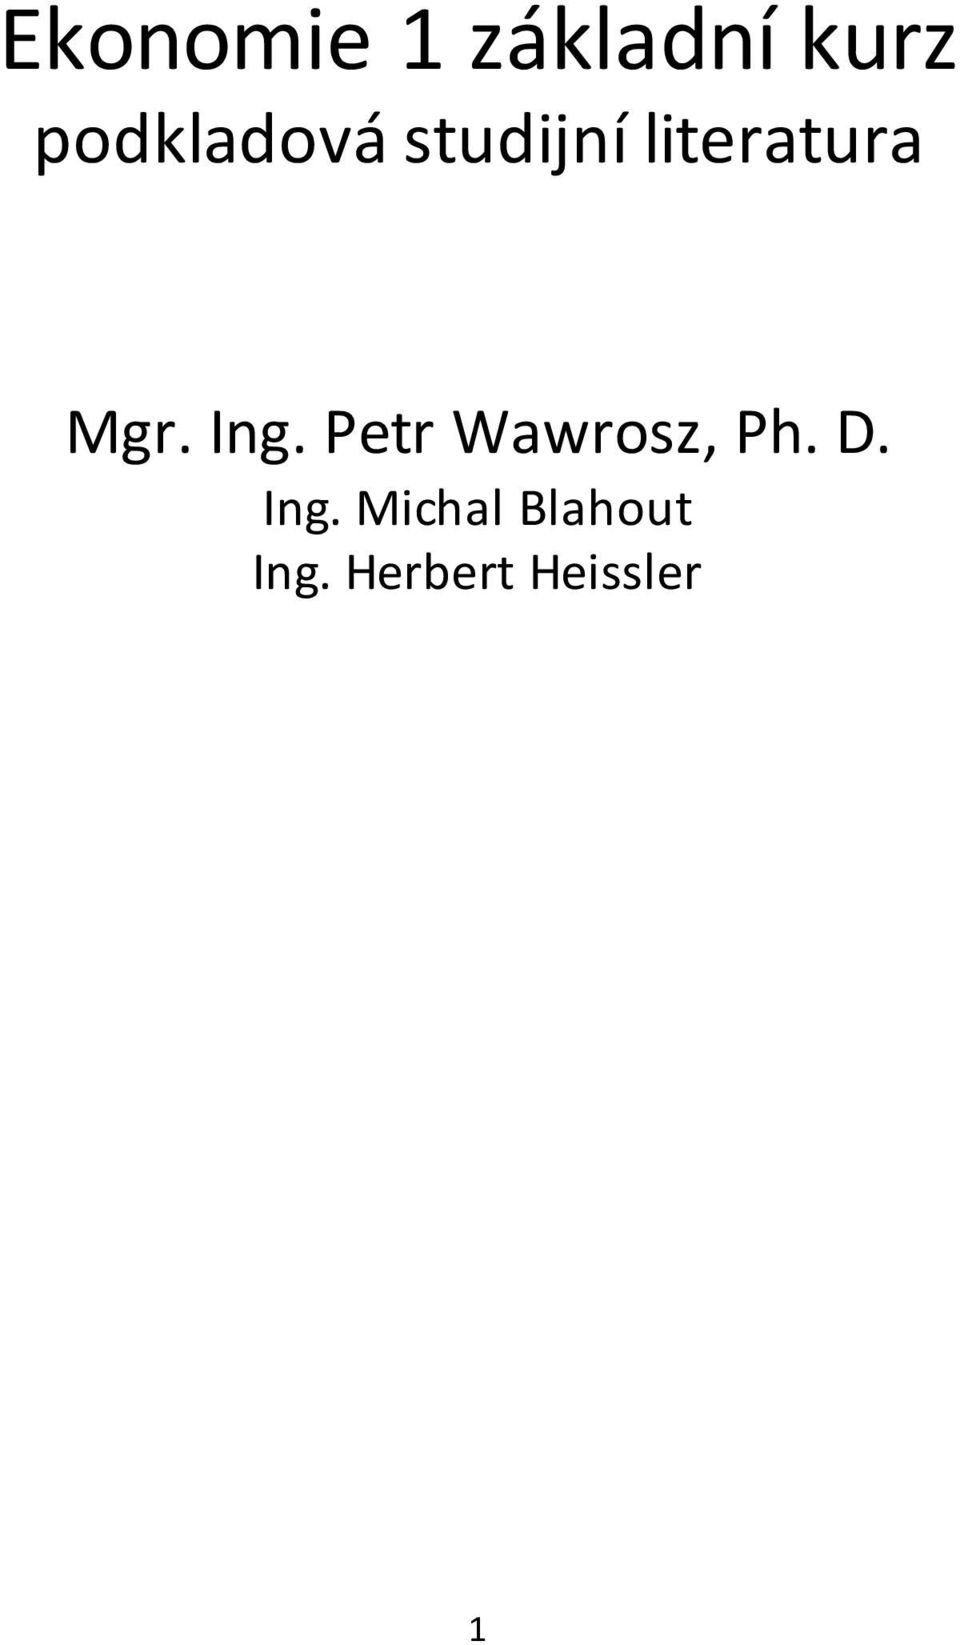 Mgr. Ing. Petr Wawrosz, Ph. D.